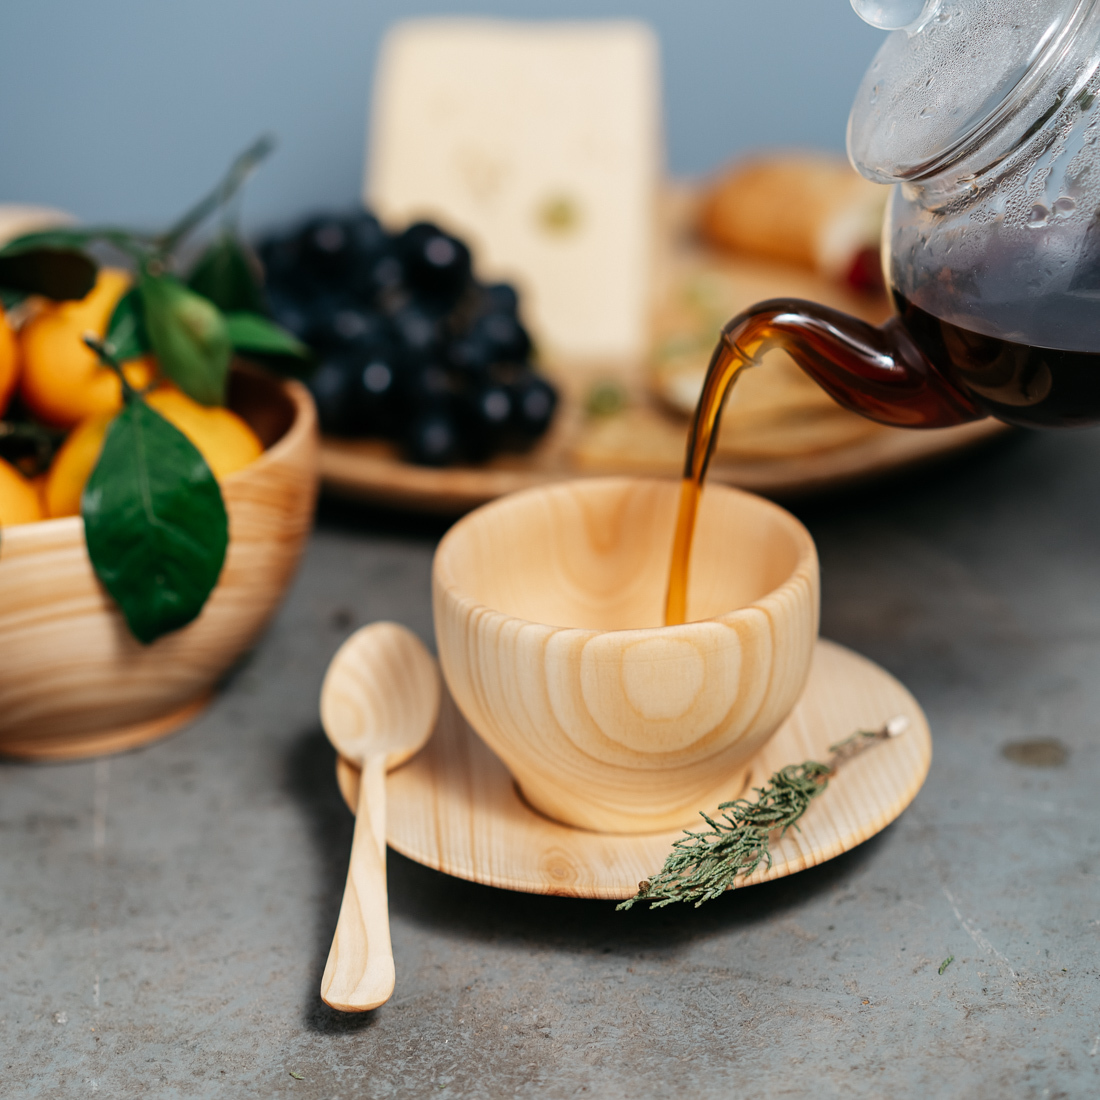 Из осу мы чайной миски ложкой. Посуда с деревянными элементами. Деревянная чашка. Деревянная посуда для чая. Чашка из дерева.